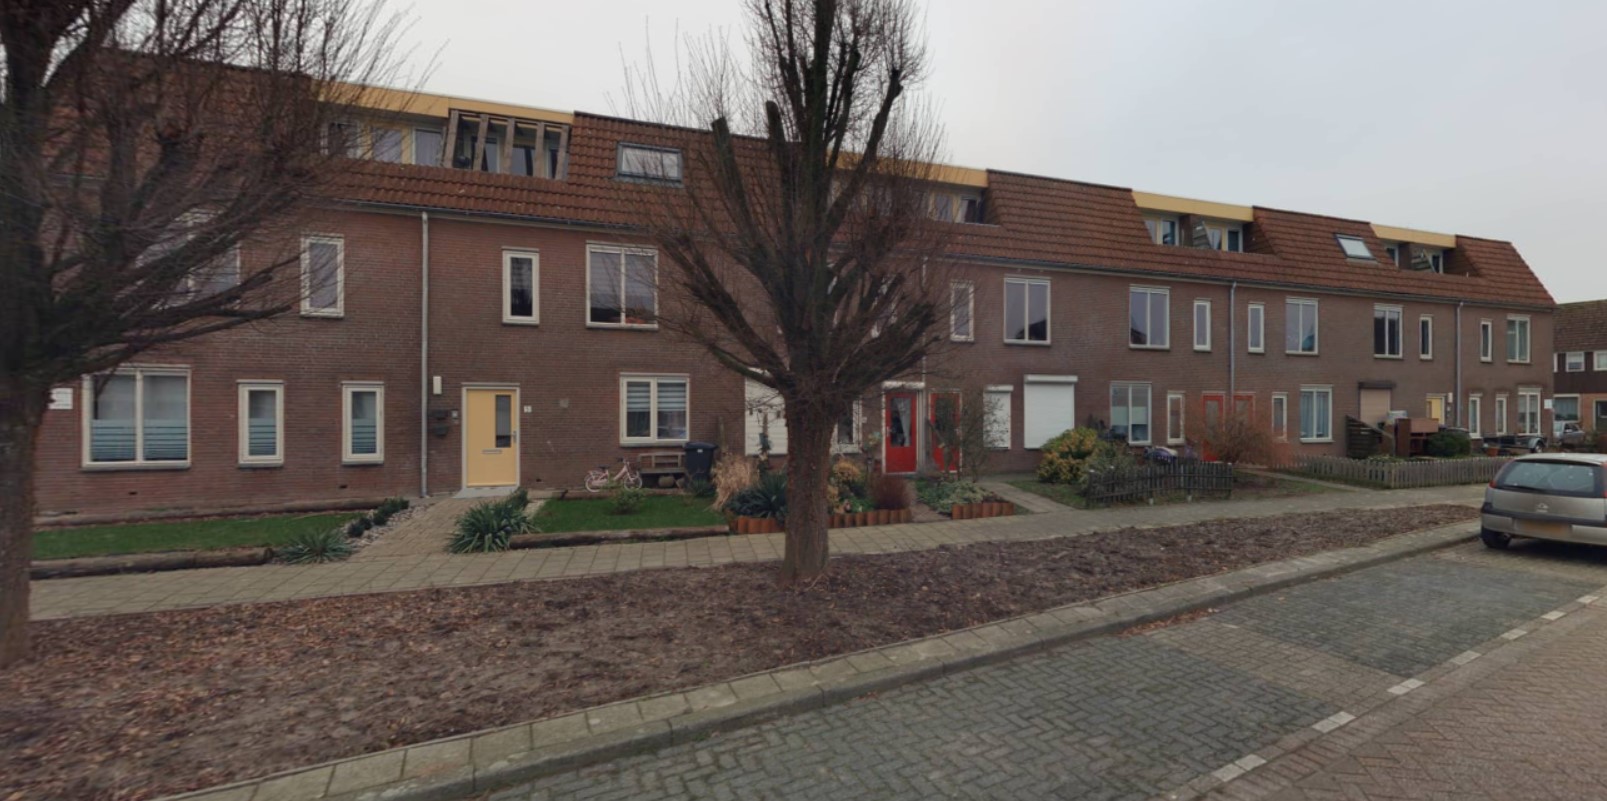 Burgemeester Bouwensestraat 21, 4694 EH Scherpenisse, Nederland